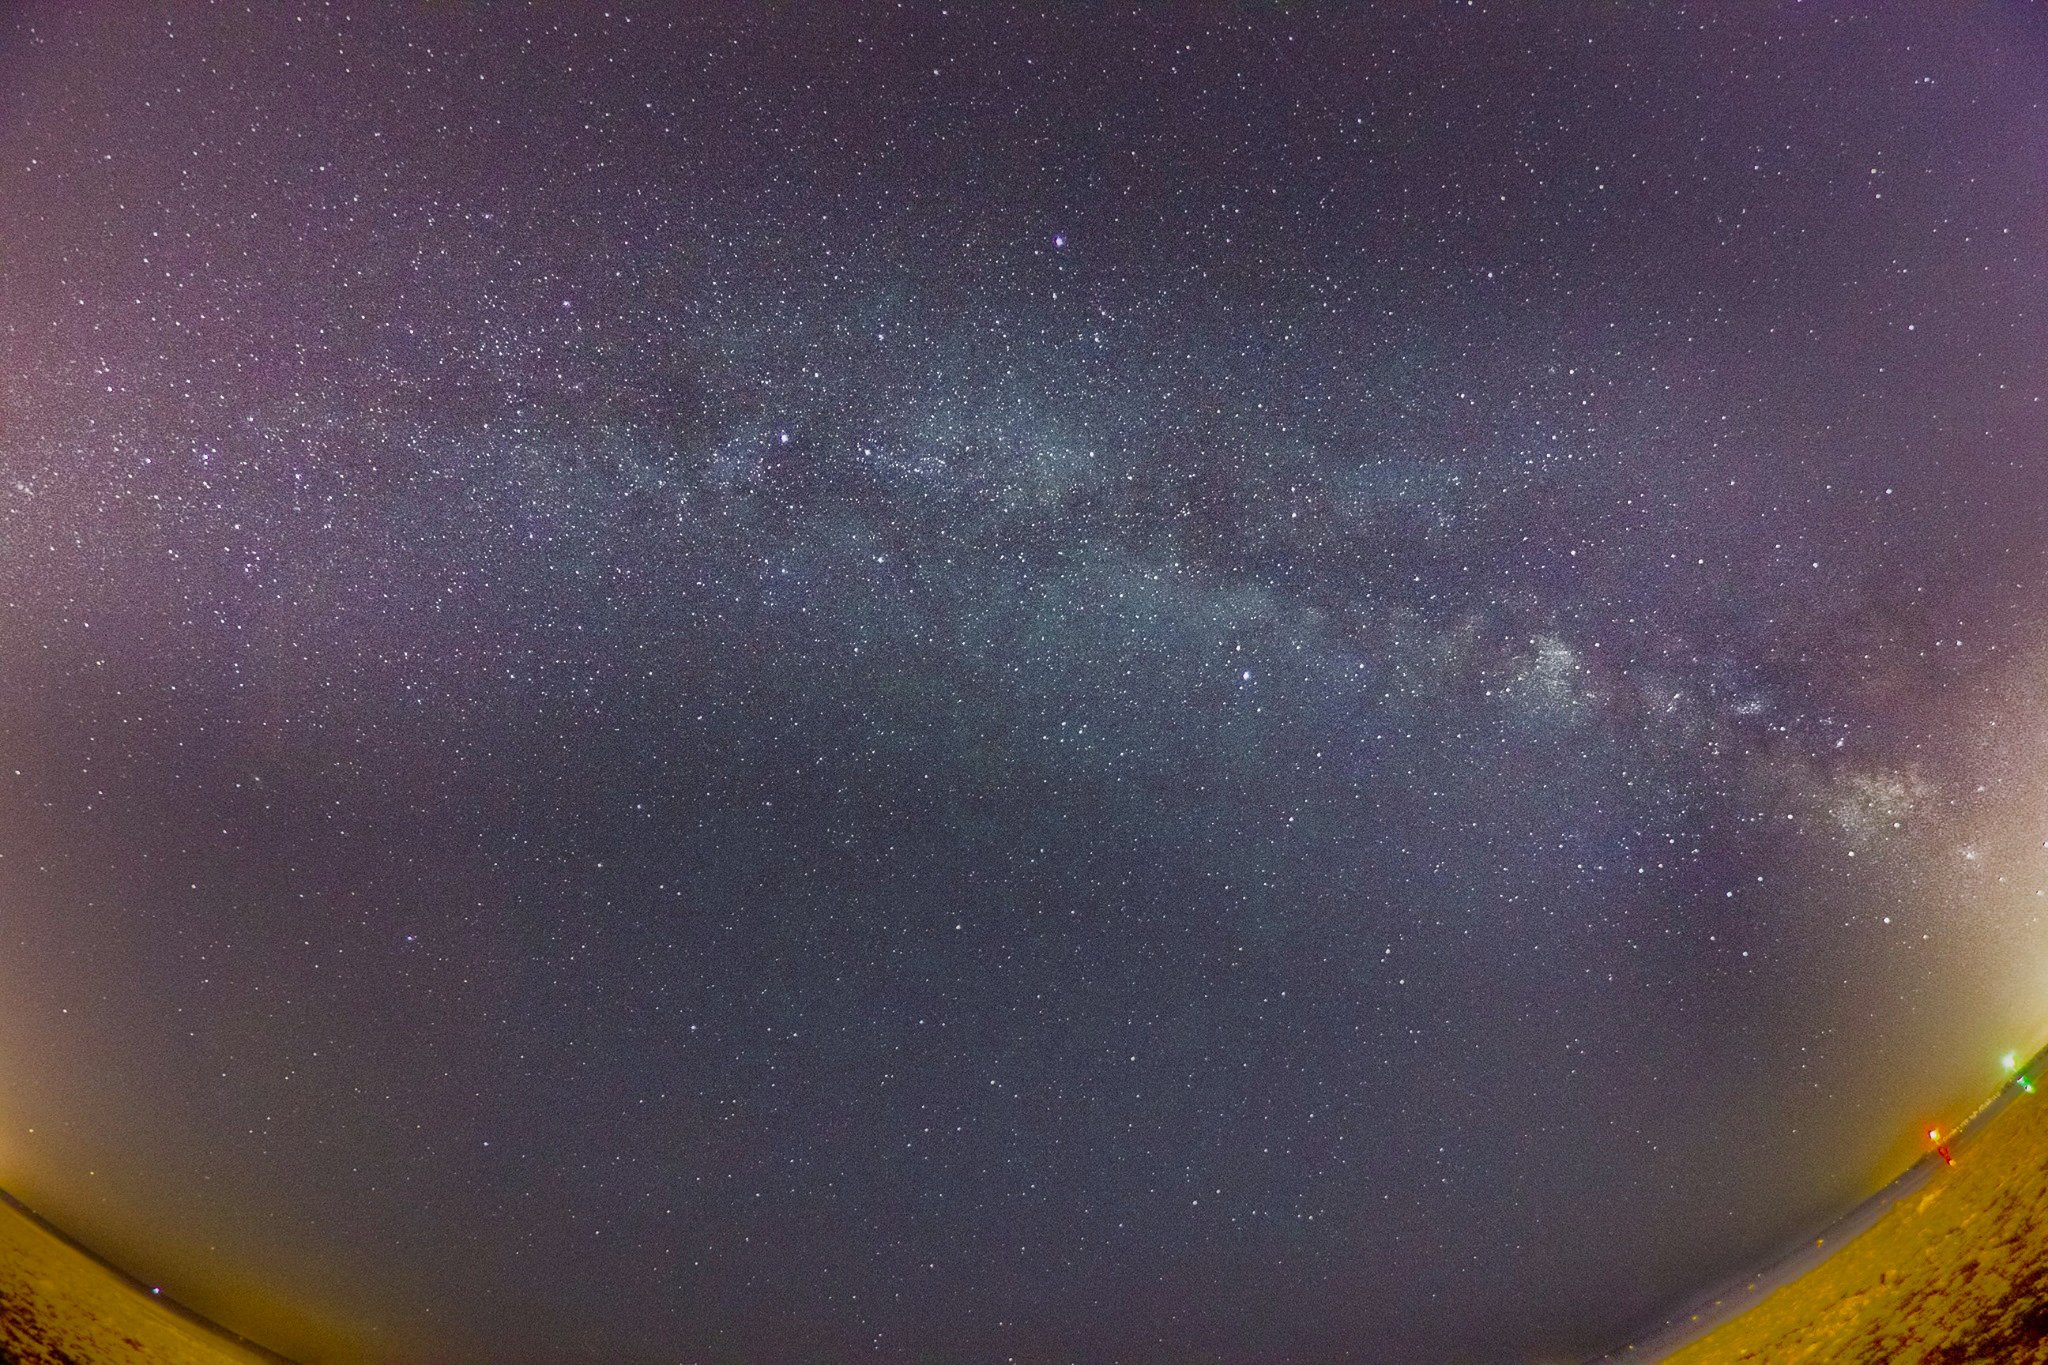 Est-ce difficile d’identifier les constellations du ciel dans un site protégé de la pollution lumineuse ?